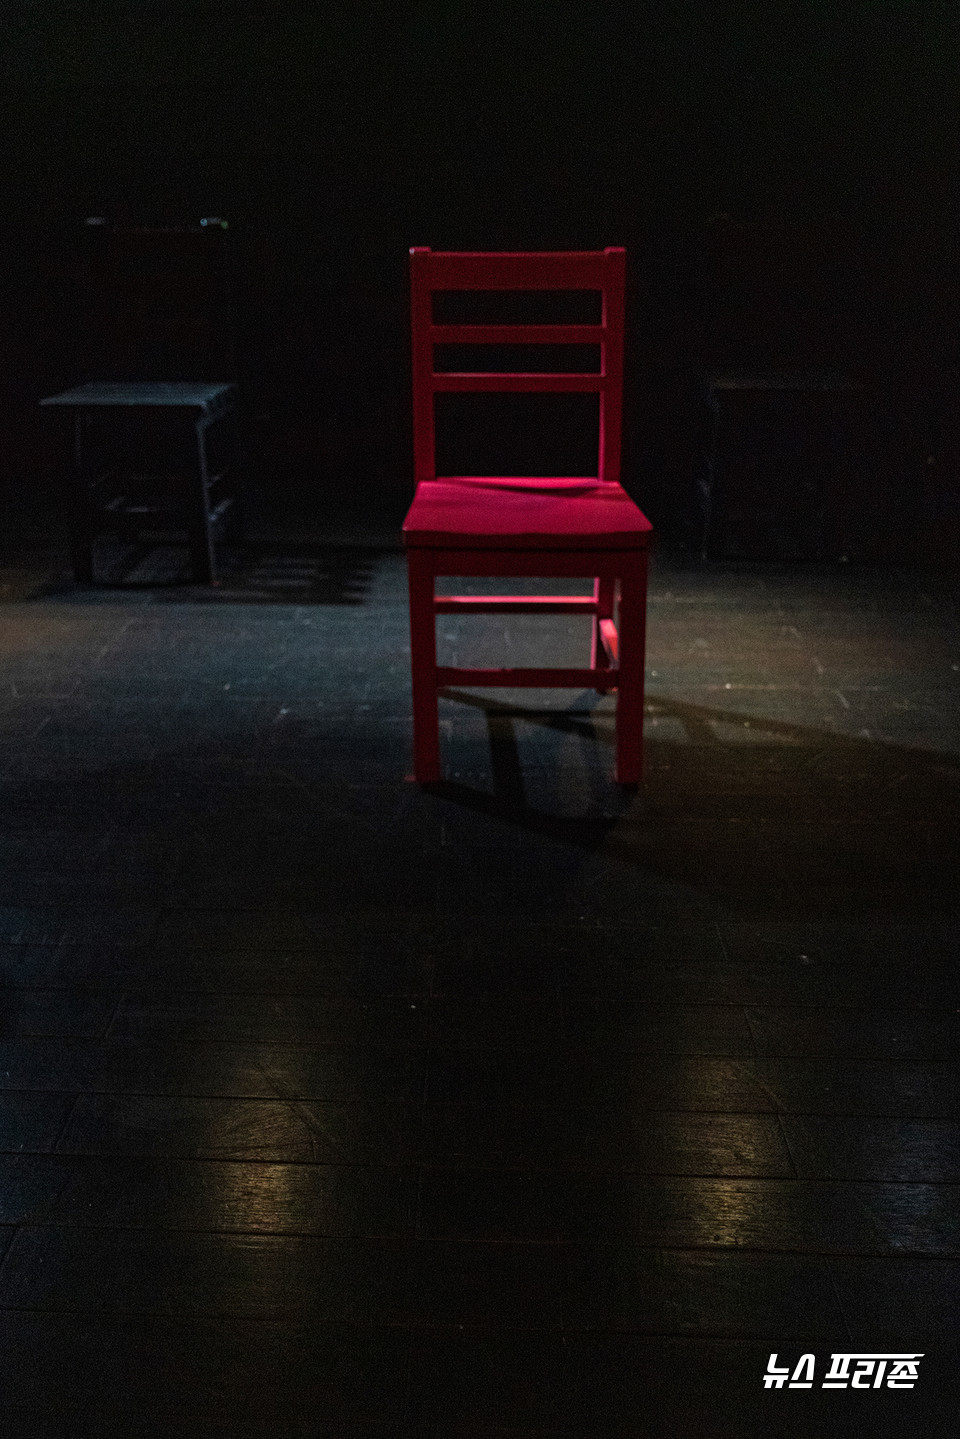 무대 양 켠에 배우들이 앉아 있고, 가운데에는 의자 몇 개와 빨간 의자 하나가 놓여 있다. 그리고 Carrie underwood의 'The champion' 노래가 반복해서 울려 퍼진다. /ⓒAejin Kwoun